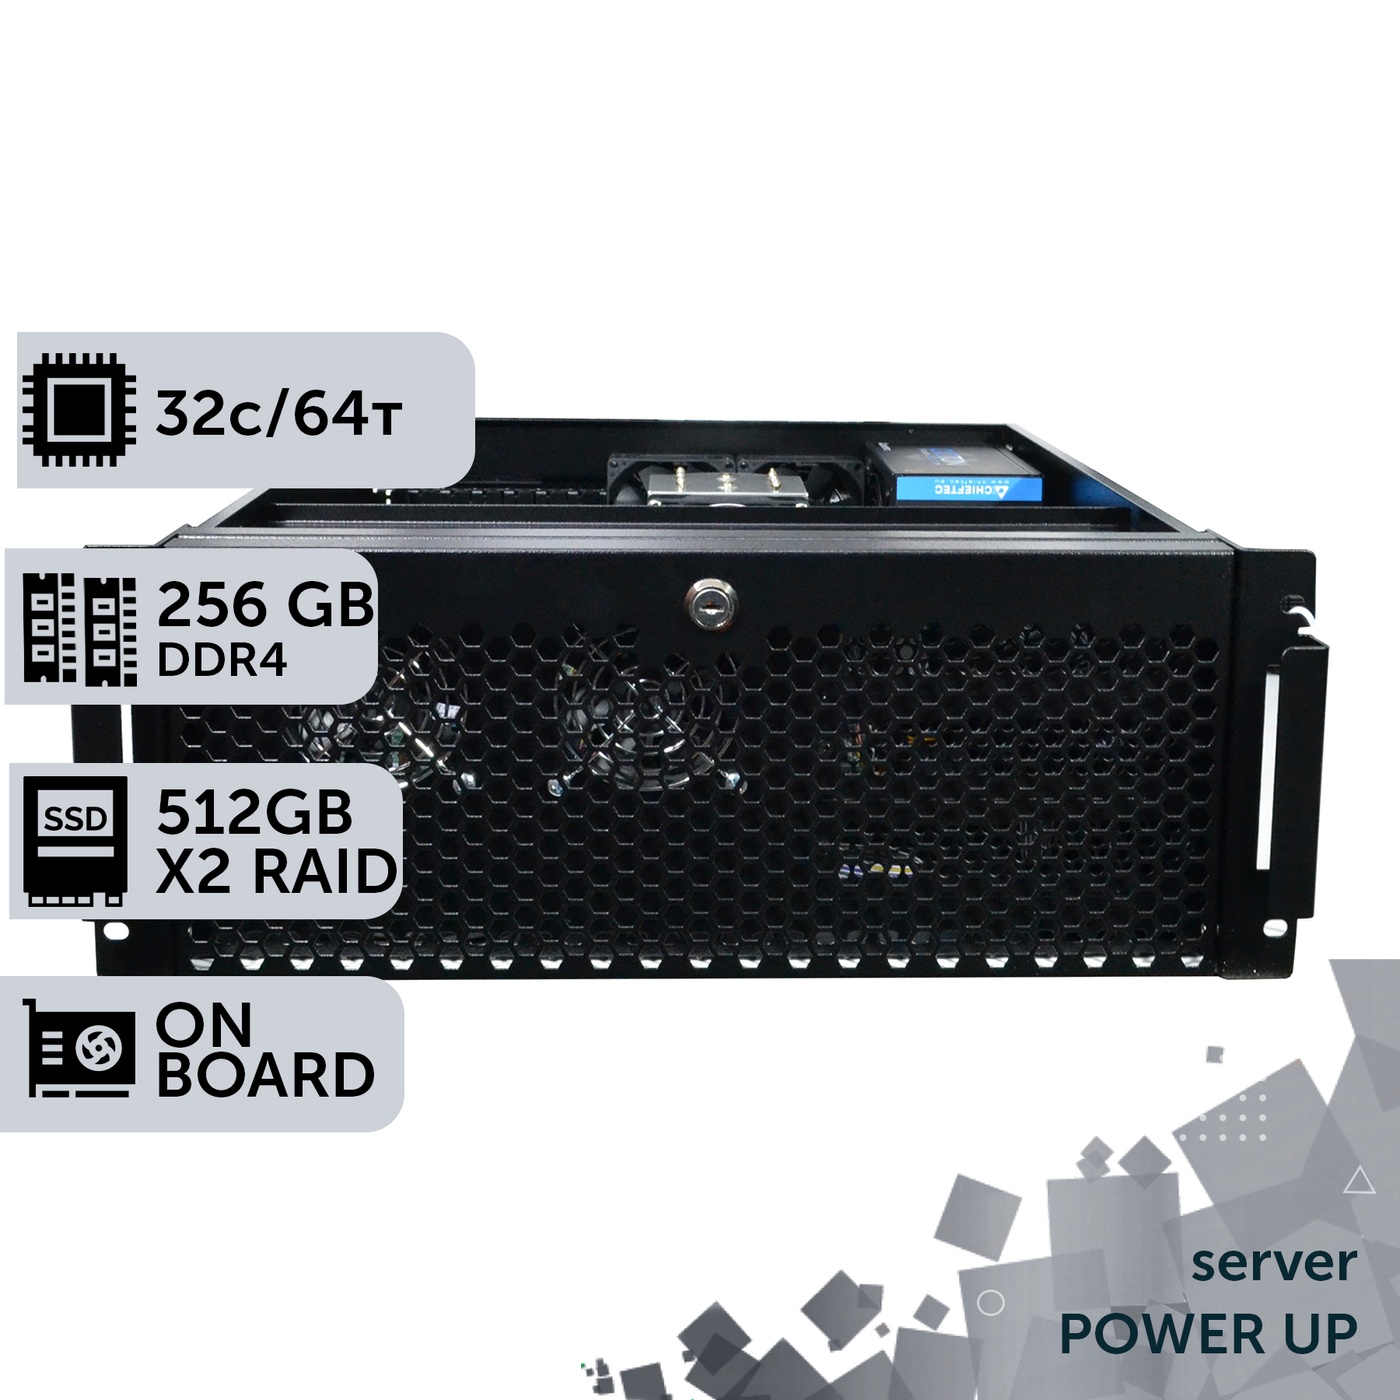 Сервер двопроцесорний TOWER PowerUp #85 AMD EPYC 7F52 x2/256 GB/SSD 512GB х2 Raid/Int Video